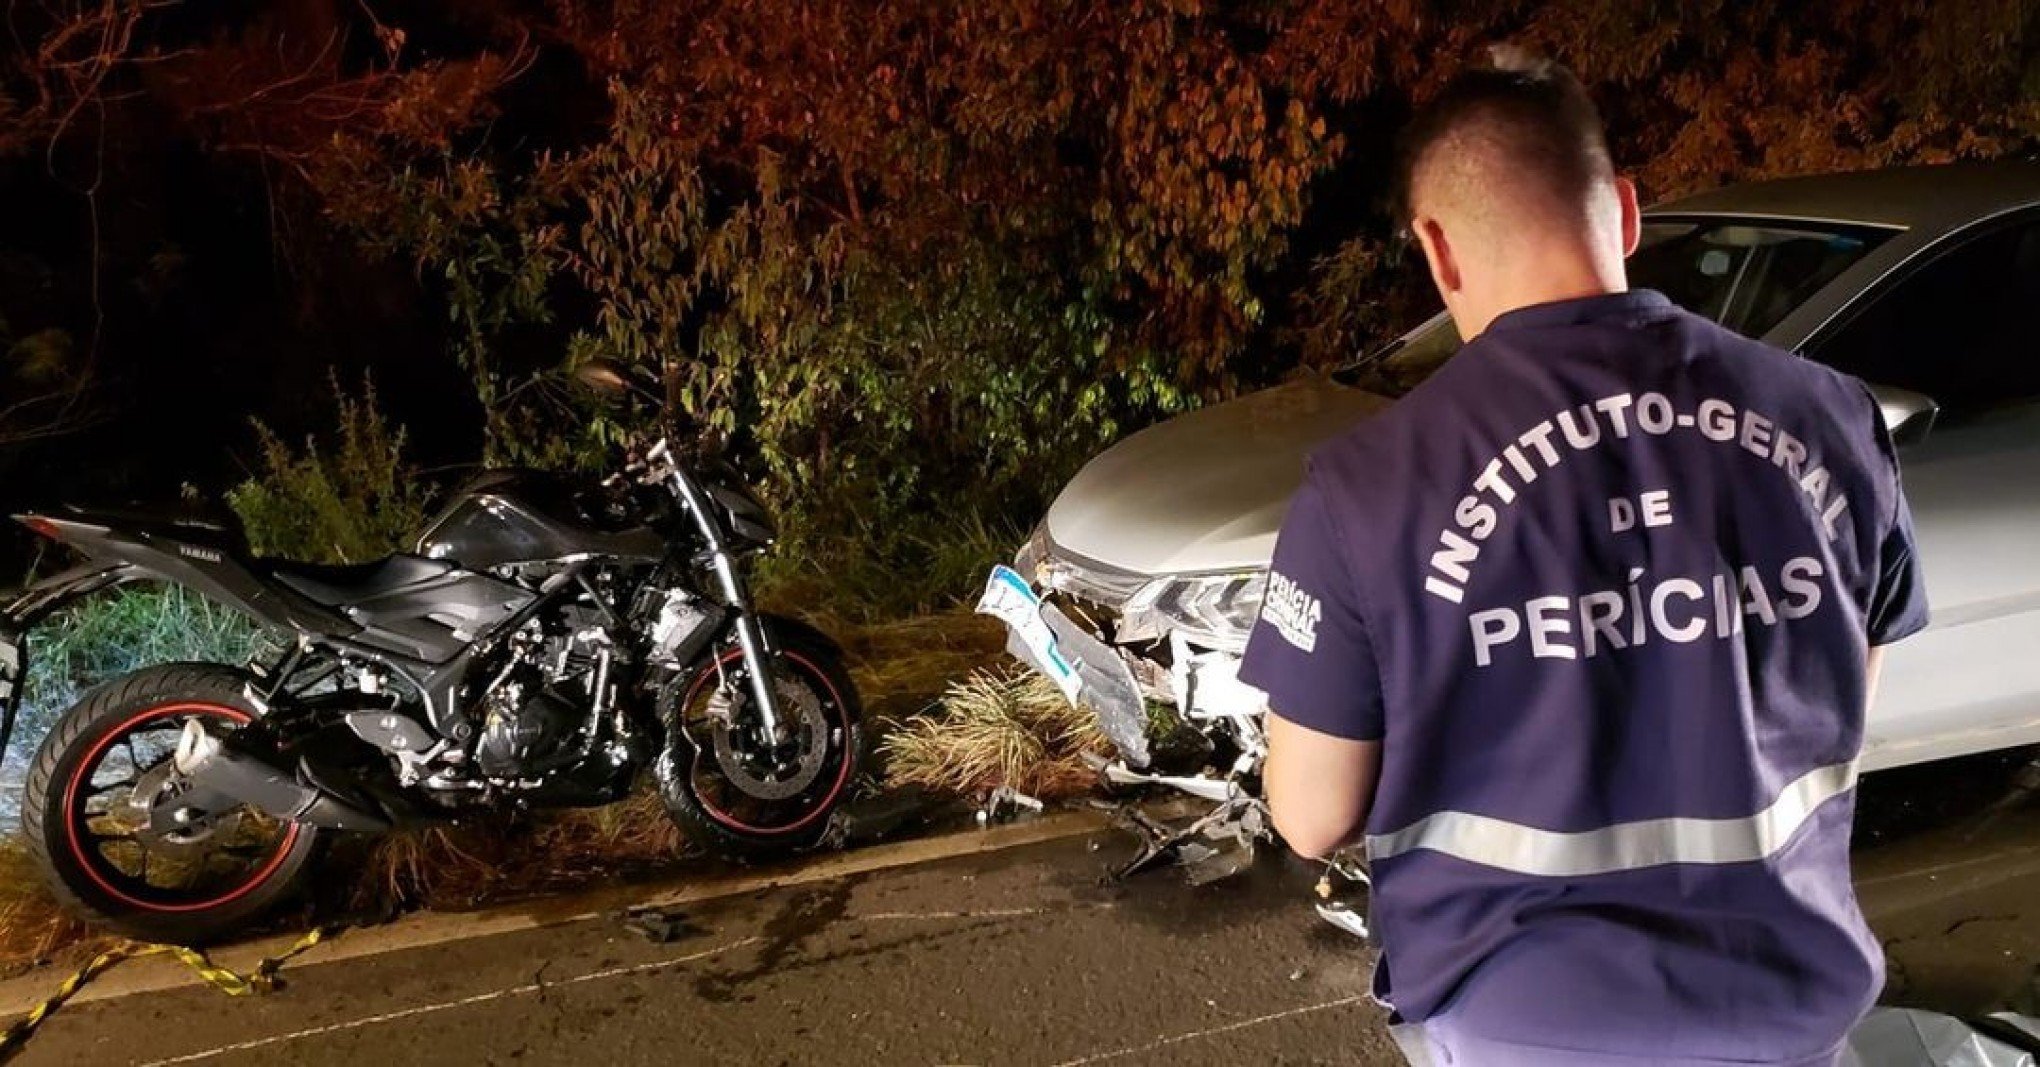 Acidente de moto mata casal em Barueri; mulher estava grávida